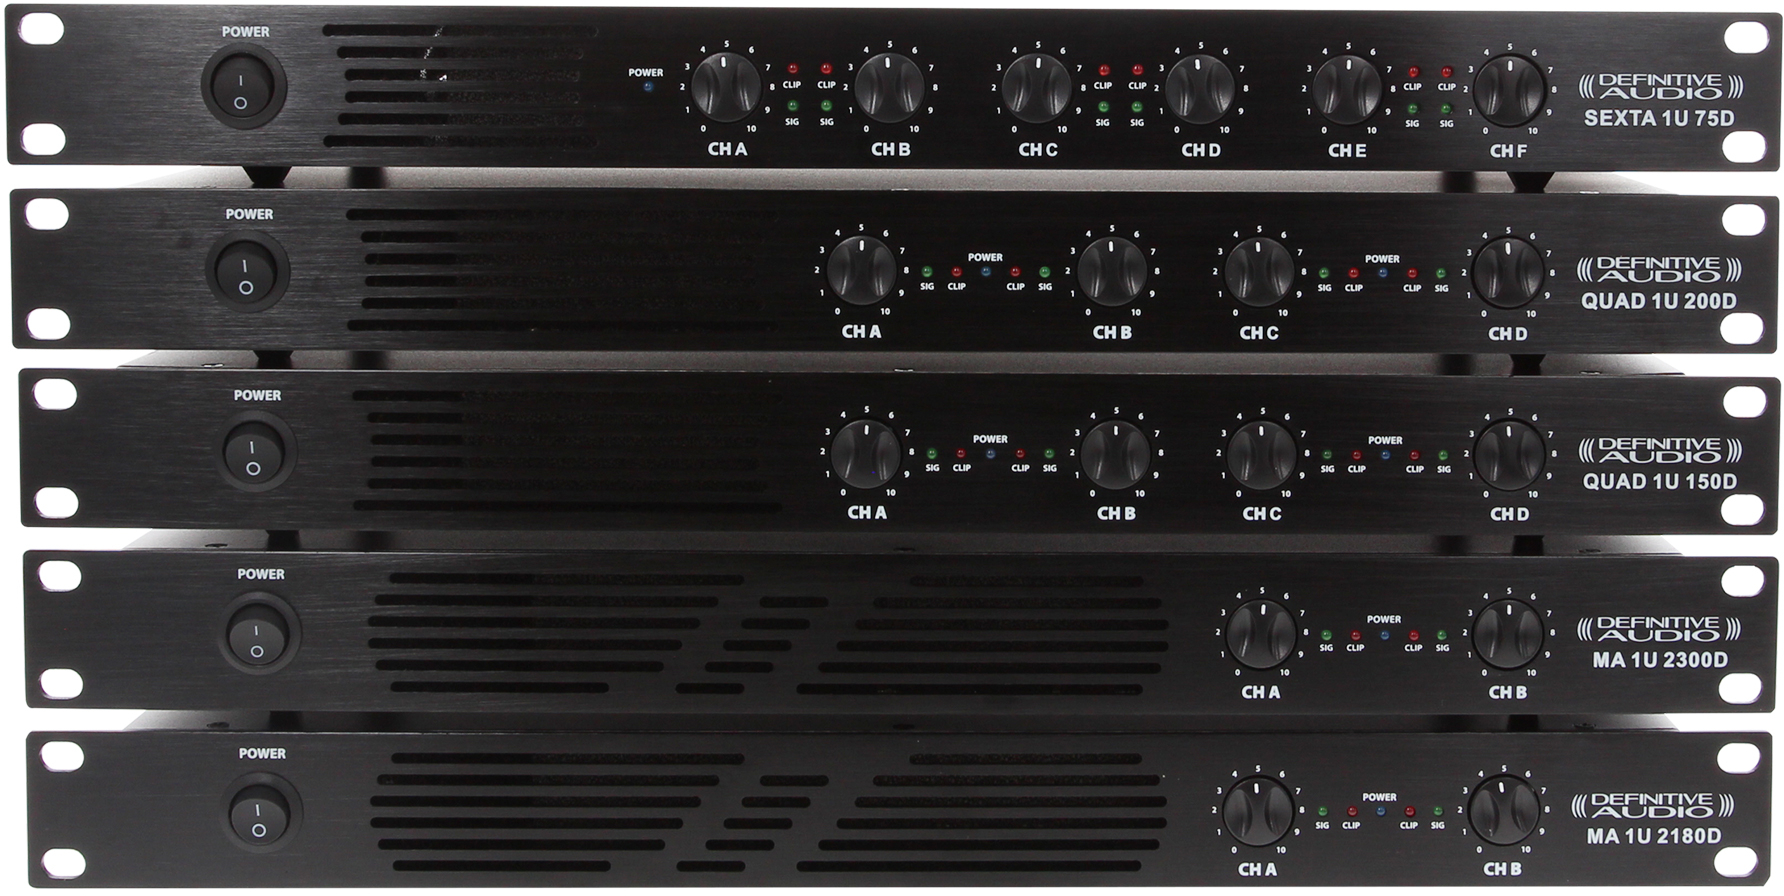 Definitive Audio Quad 1u 150d - Multiple channels power amplifier - Variation 5